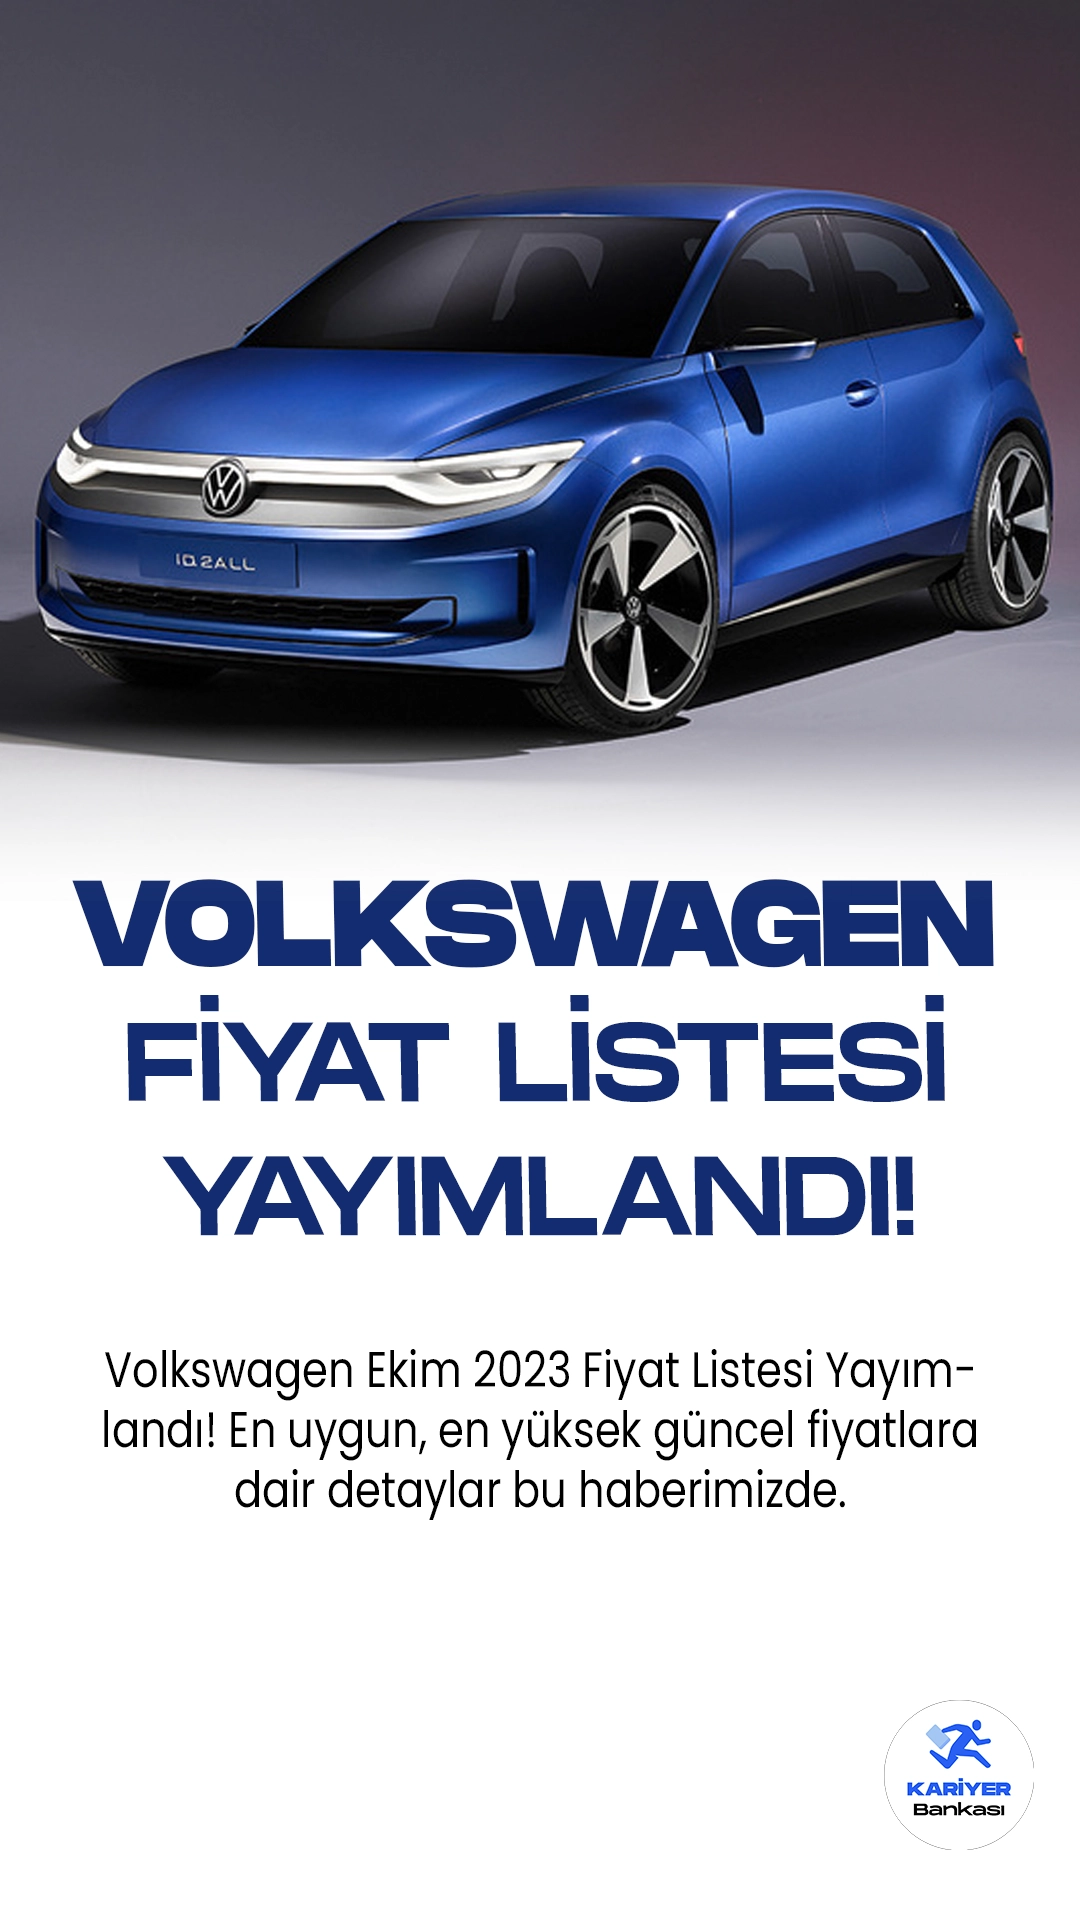 Volkswagen Ekim 2023 Fiyat Listesi Yayımlandı!Volkswagen, geniş ve çeşitli model yelpazesi ile otomobil tutkunlarının beğenisini kazanmaya devam ediyor. Alman otomotiv devinin 2023 model serisi, Polo'dan Touareg'e kadar uzanan çeşitlilikle dikkat çekiyor.